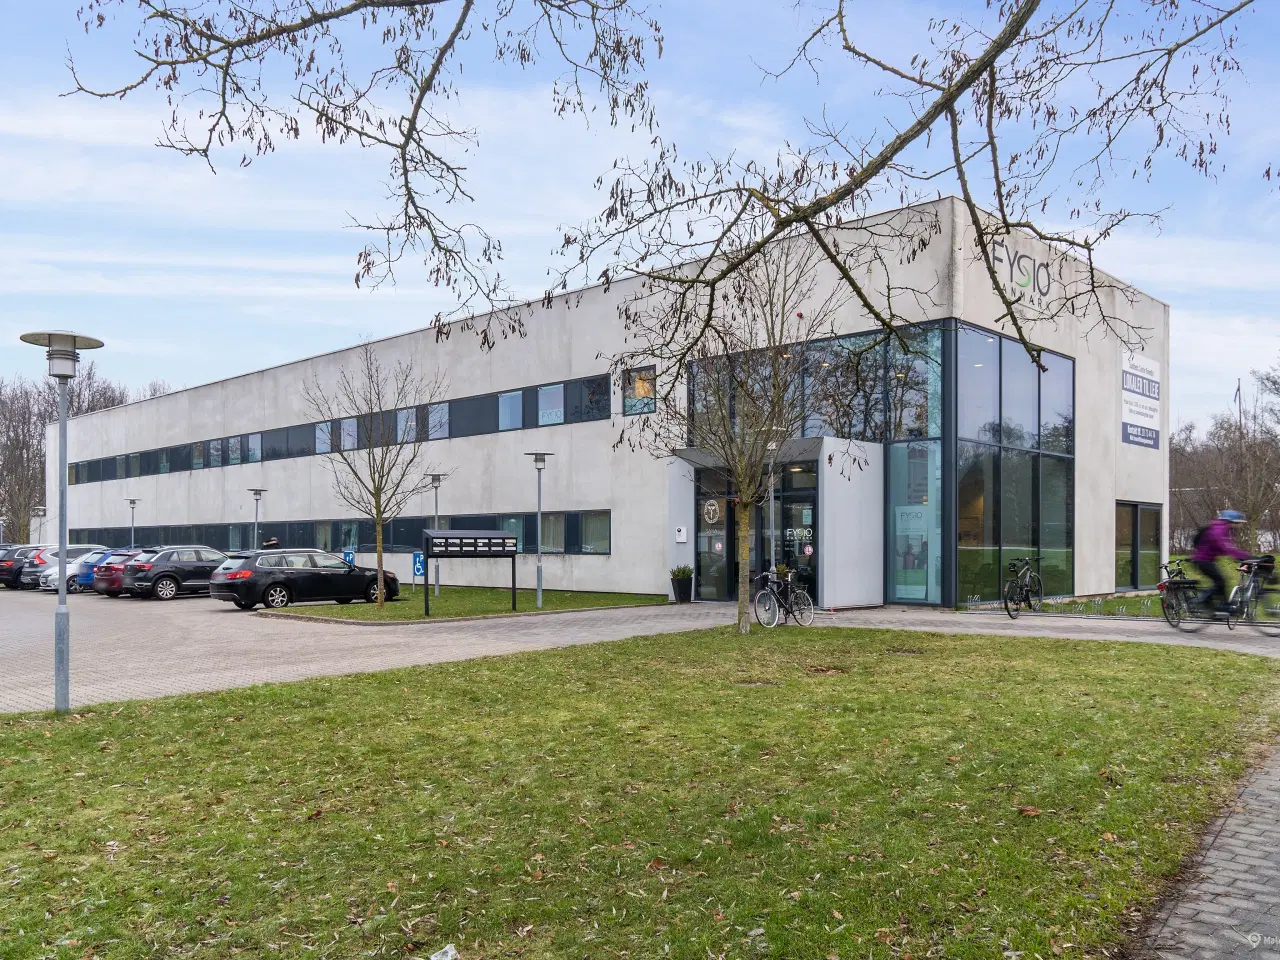 Billede 1 - Kliniklokaler/behandlerrum i moderne Sundhedshus Brøndby